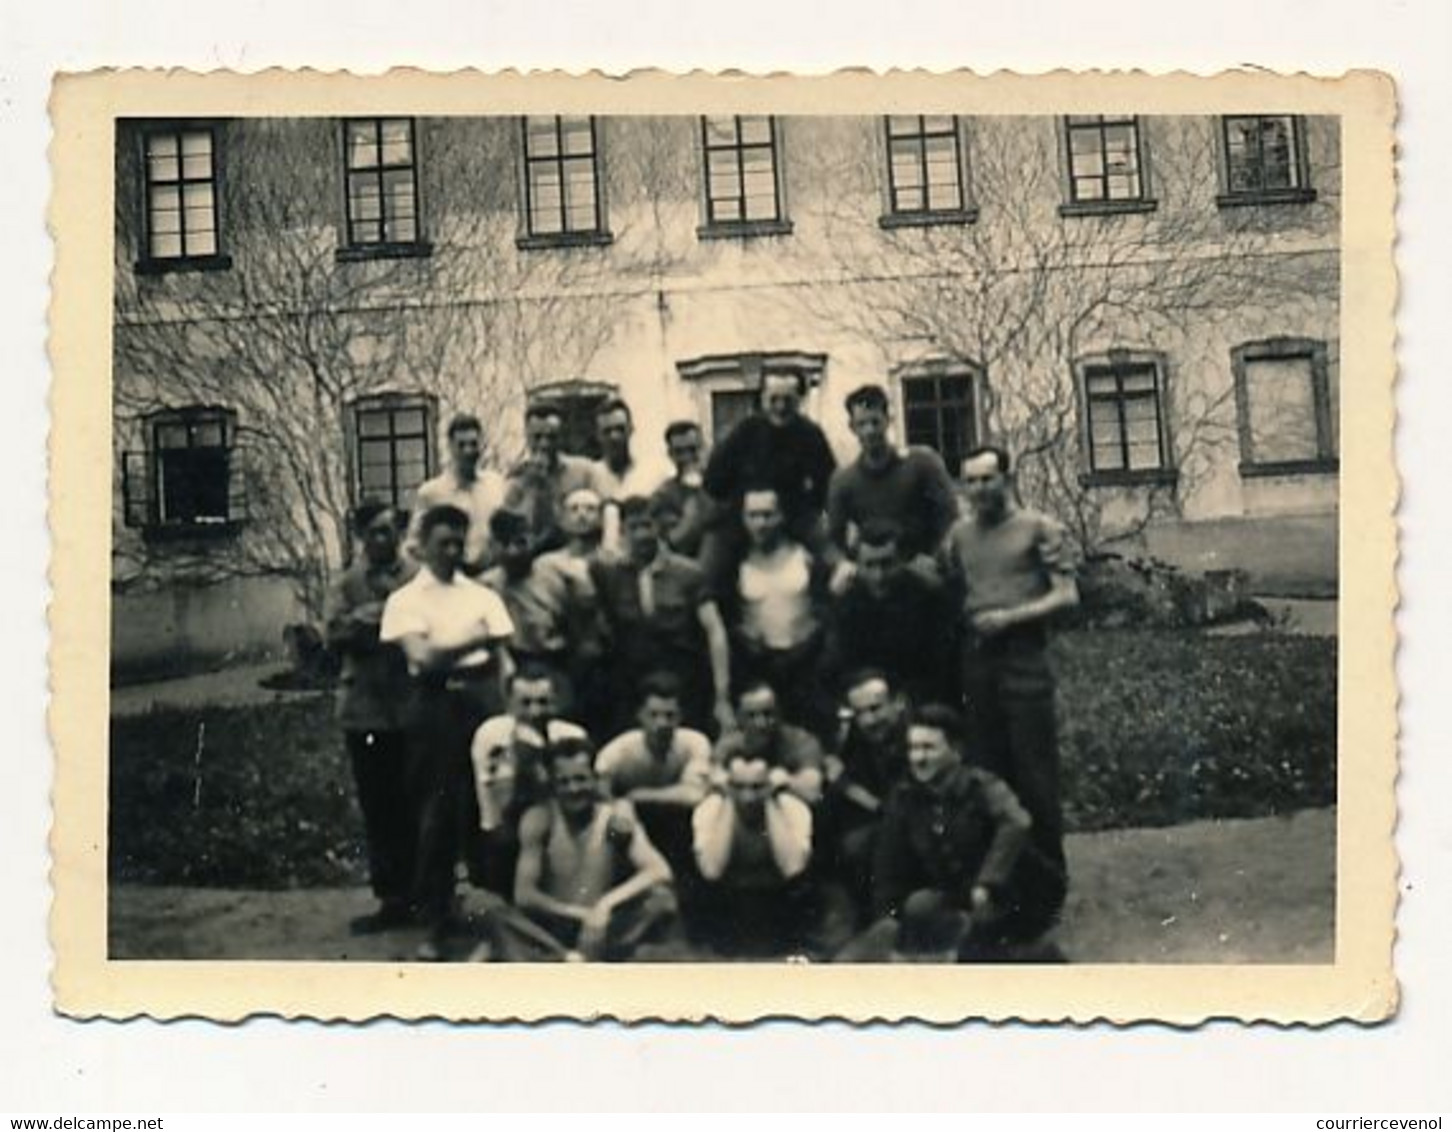 Lot 7 petites photos - Prisonniers, groupes militaires, aumonier militaire, famille - 5 avec cachet Stalag XIII B au dos